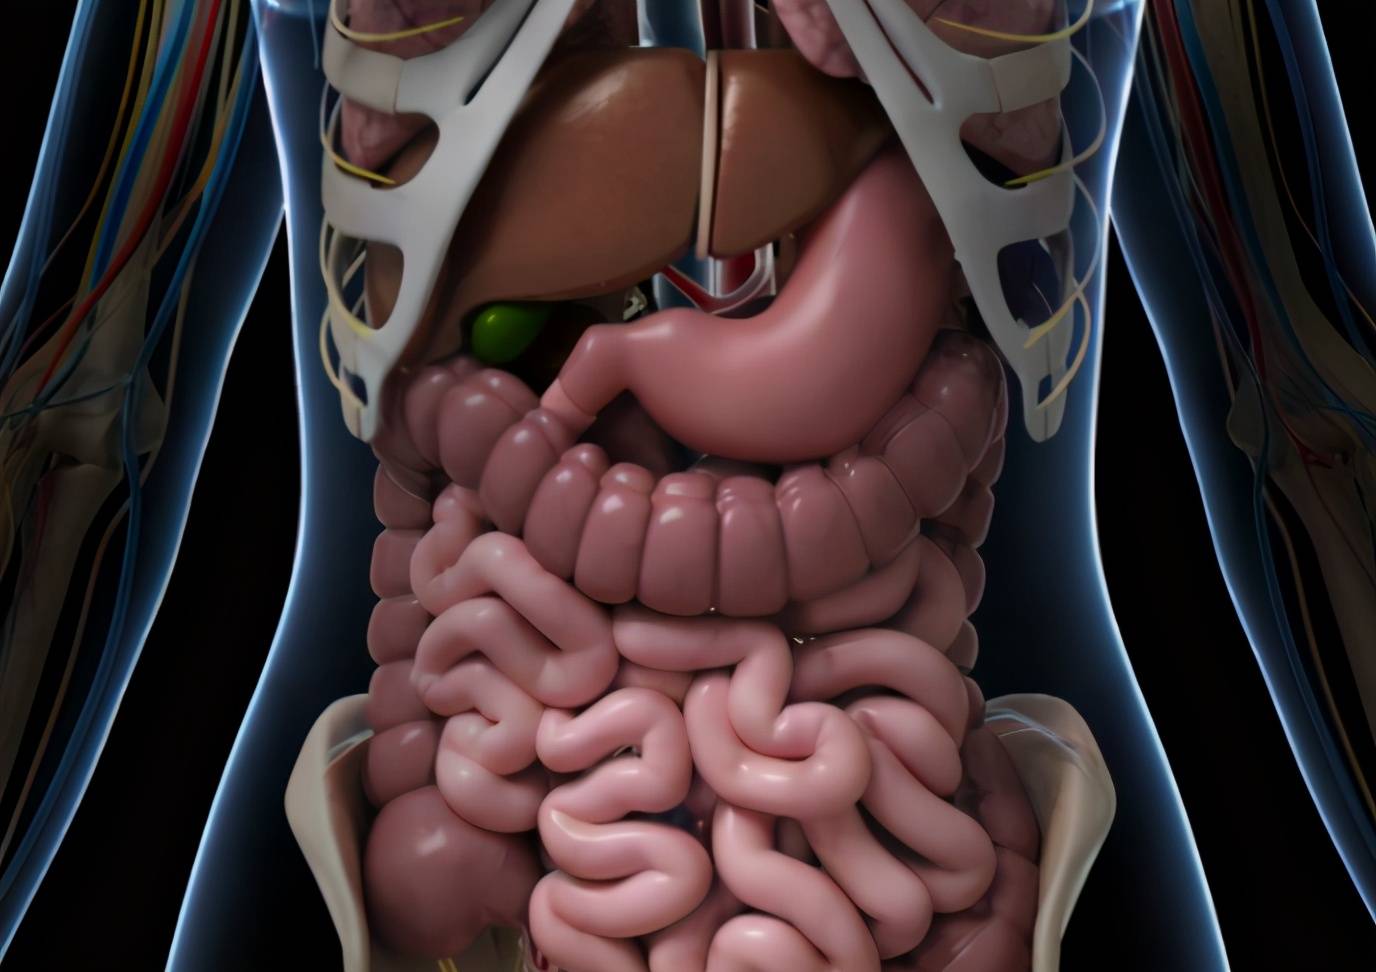 肝胃位置图片大全图片